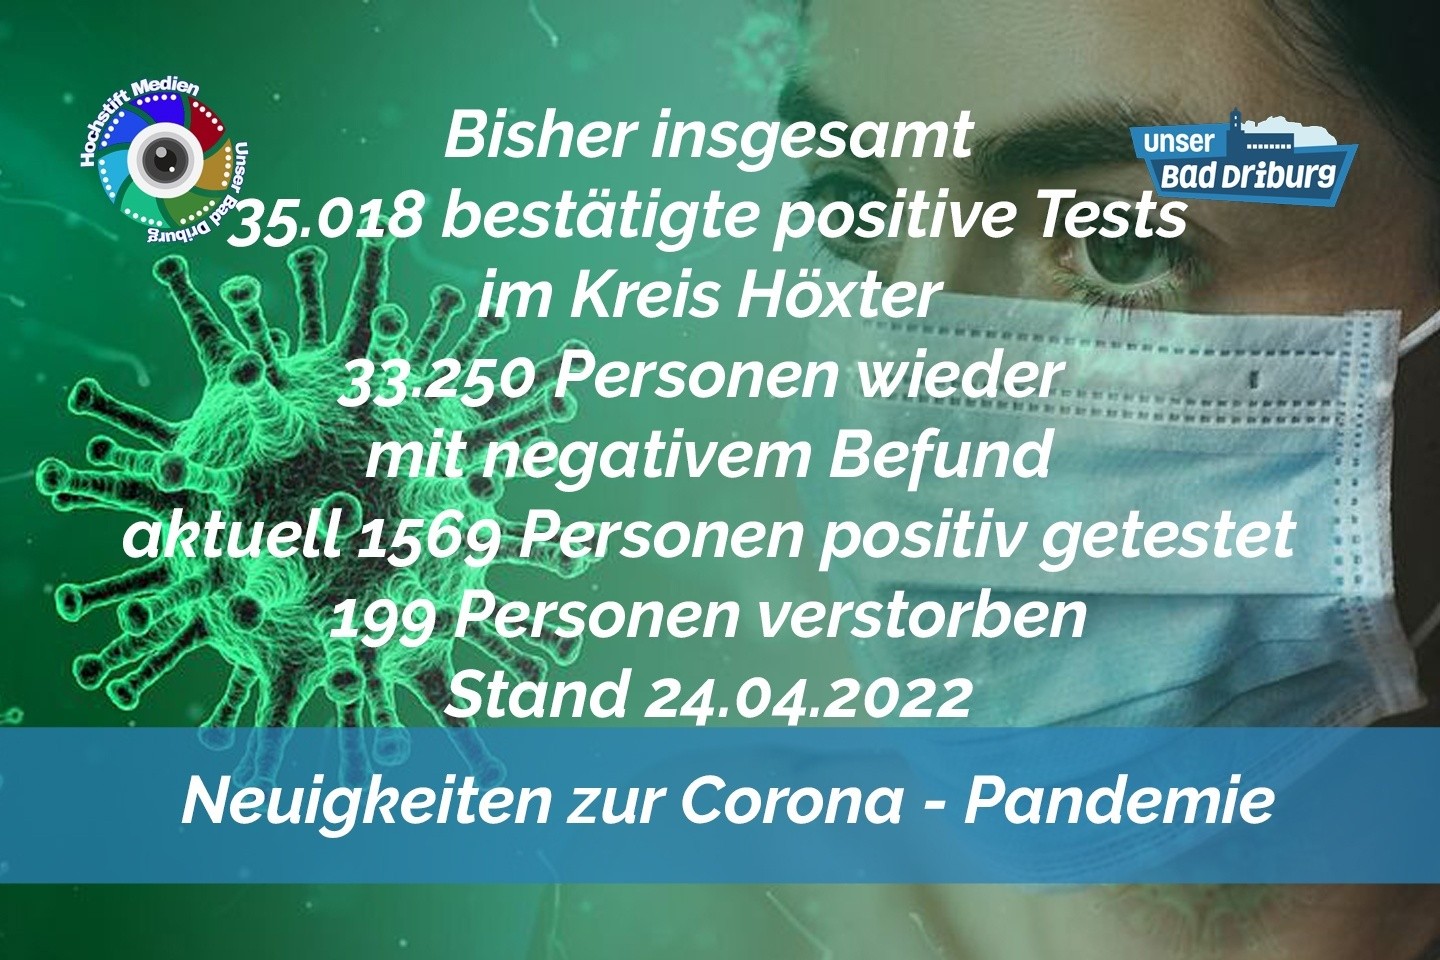 Update 24. April 2022: 37 weitere amtlich positive Tests im Kreis Höxter